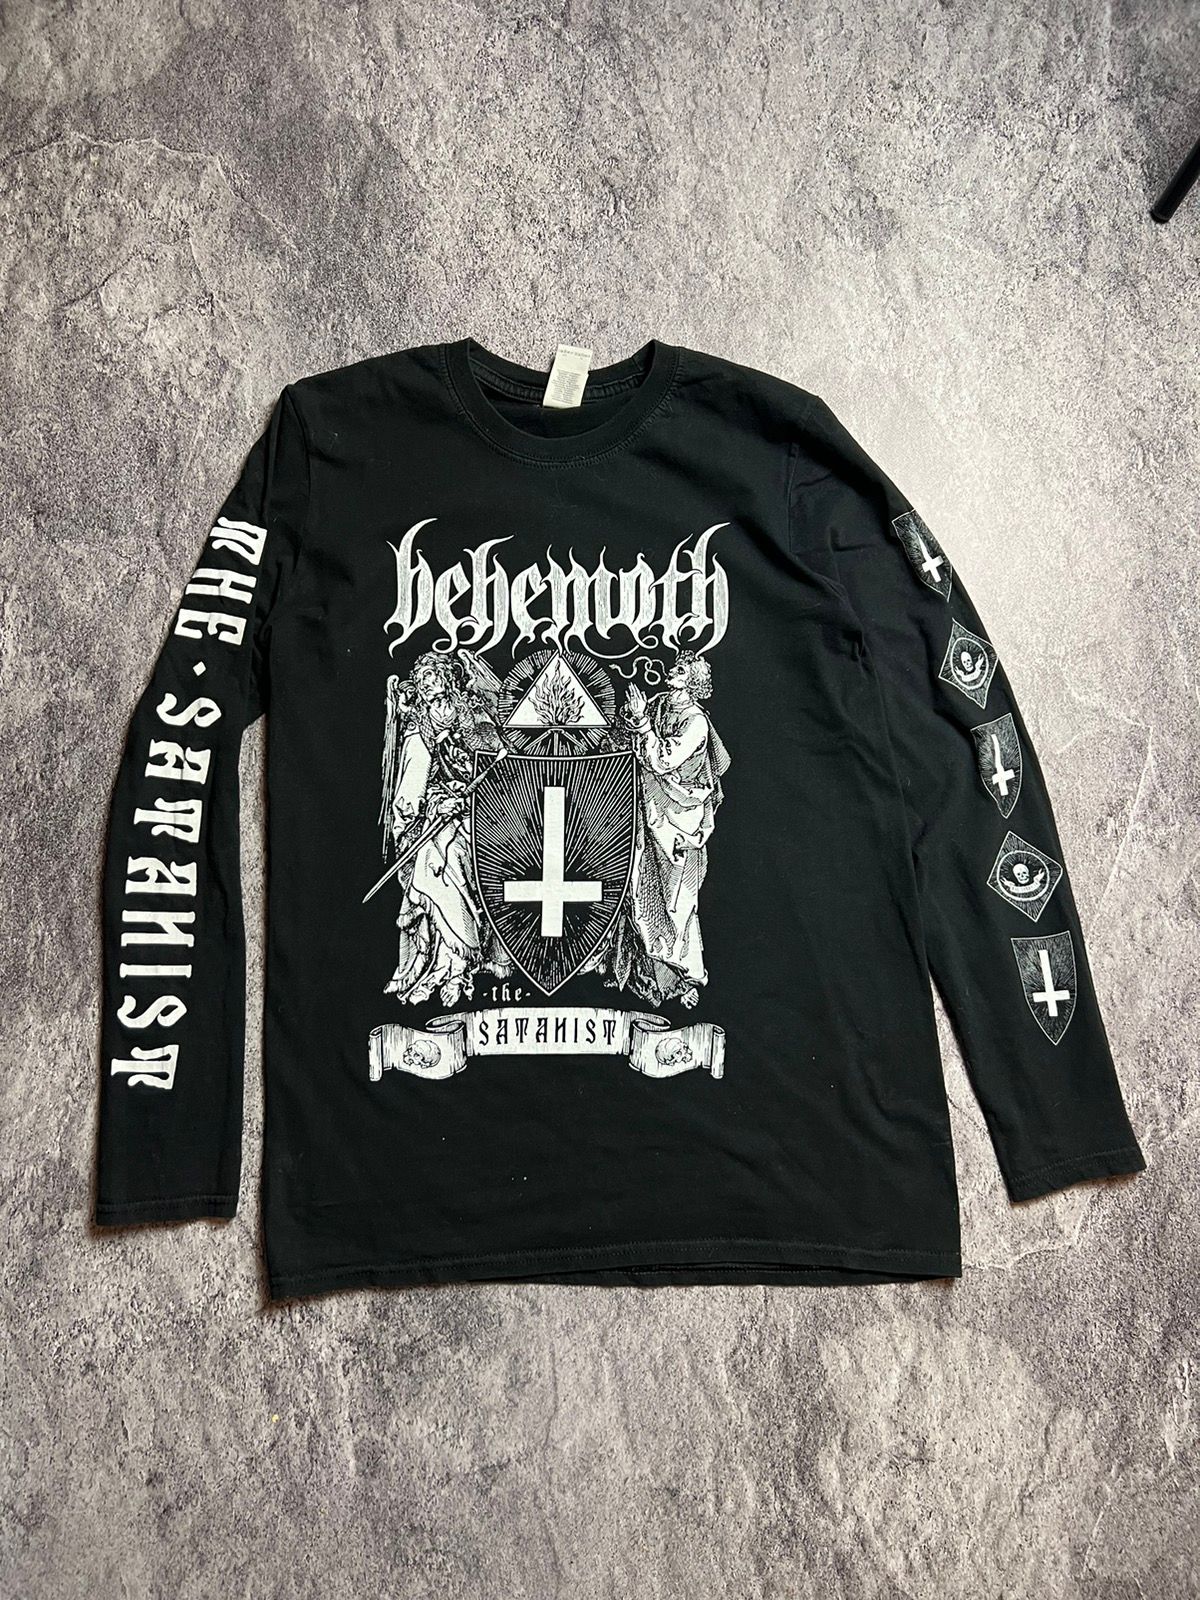 Pre-owned Band Tees X Rock Tees Y2k Behemoth Satanist Extreme Metal Band Tour Skull Tee In Black